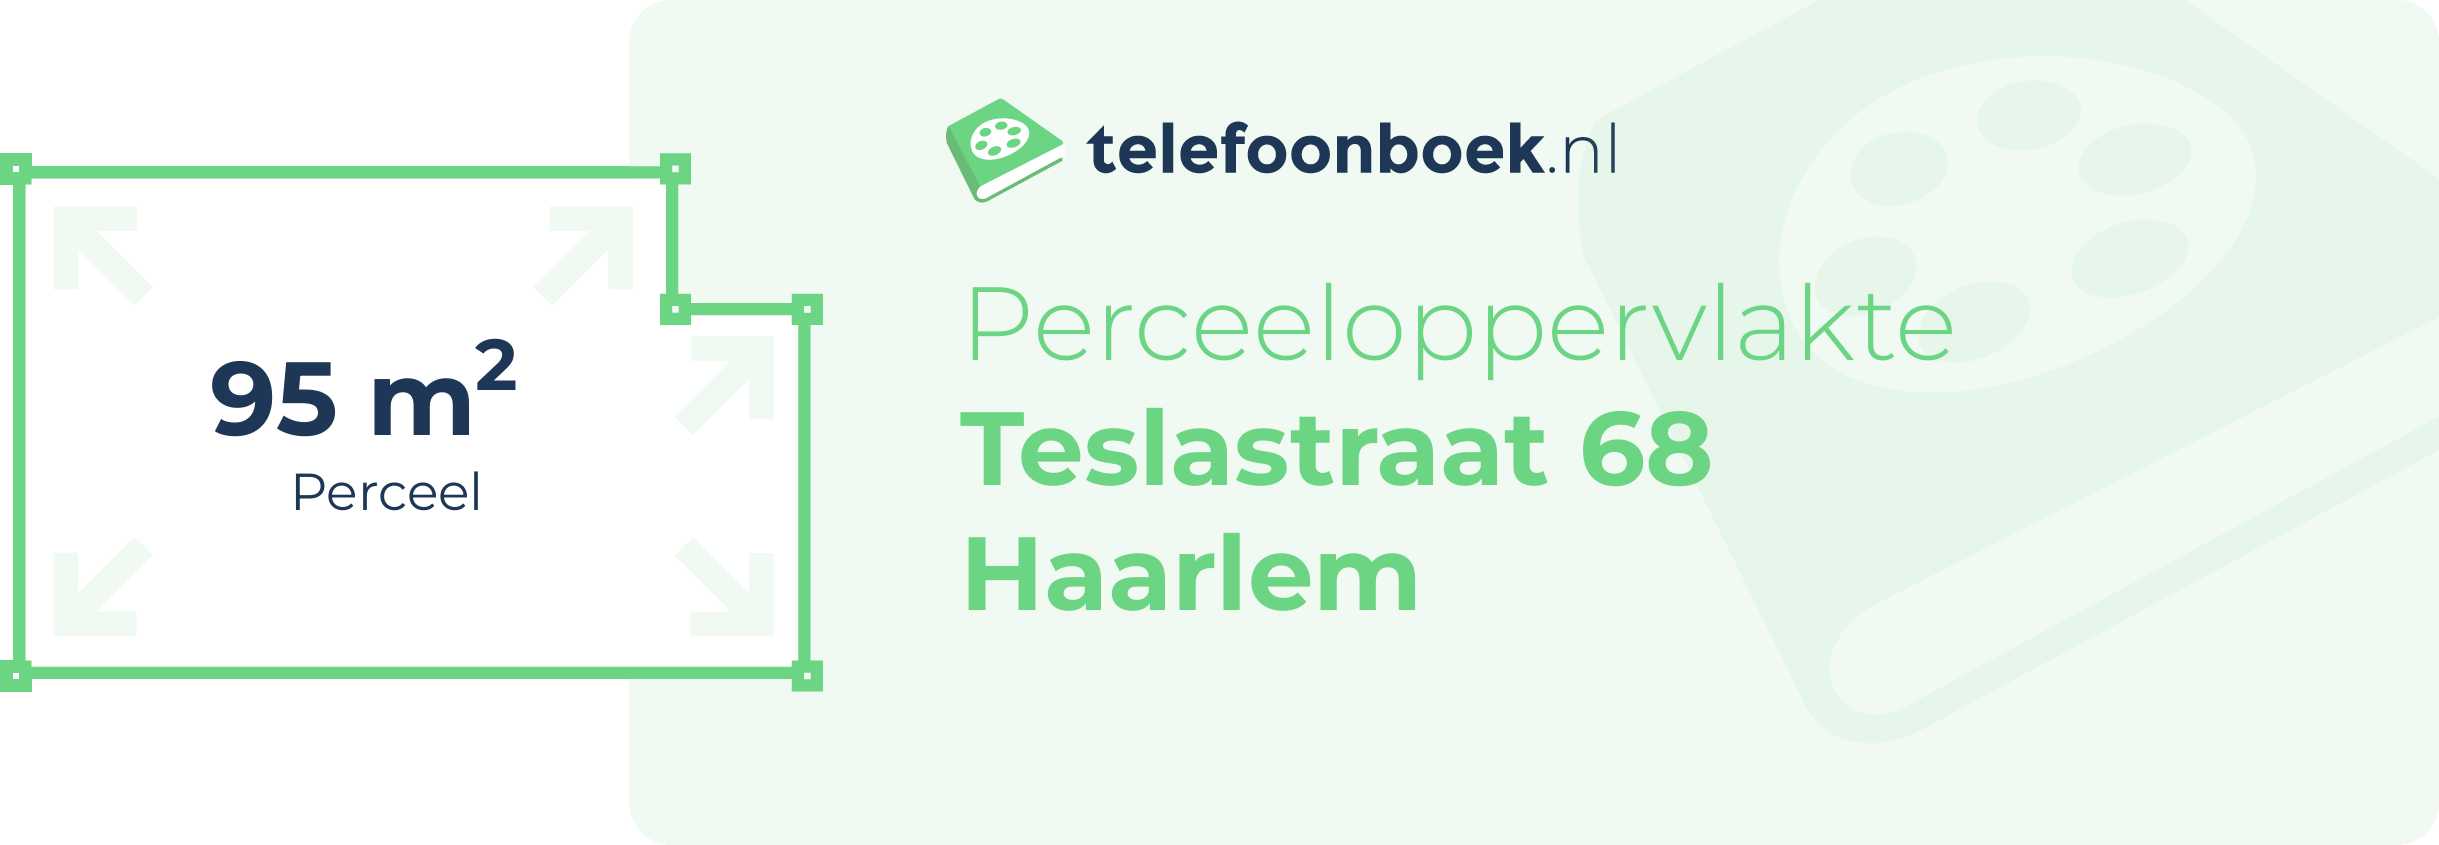 Perceeloppervlakte Teslastraat 68 Haarlem